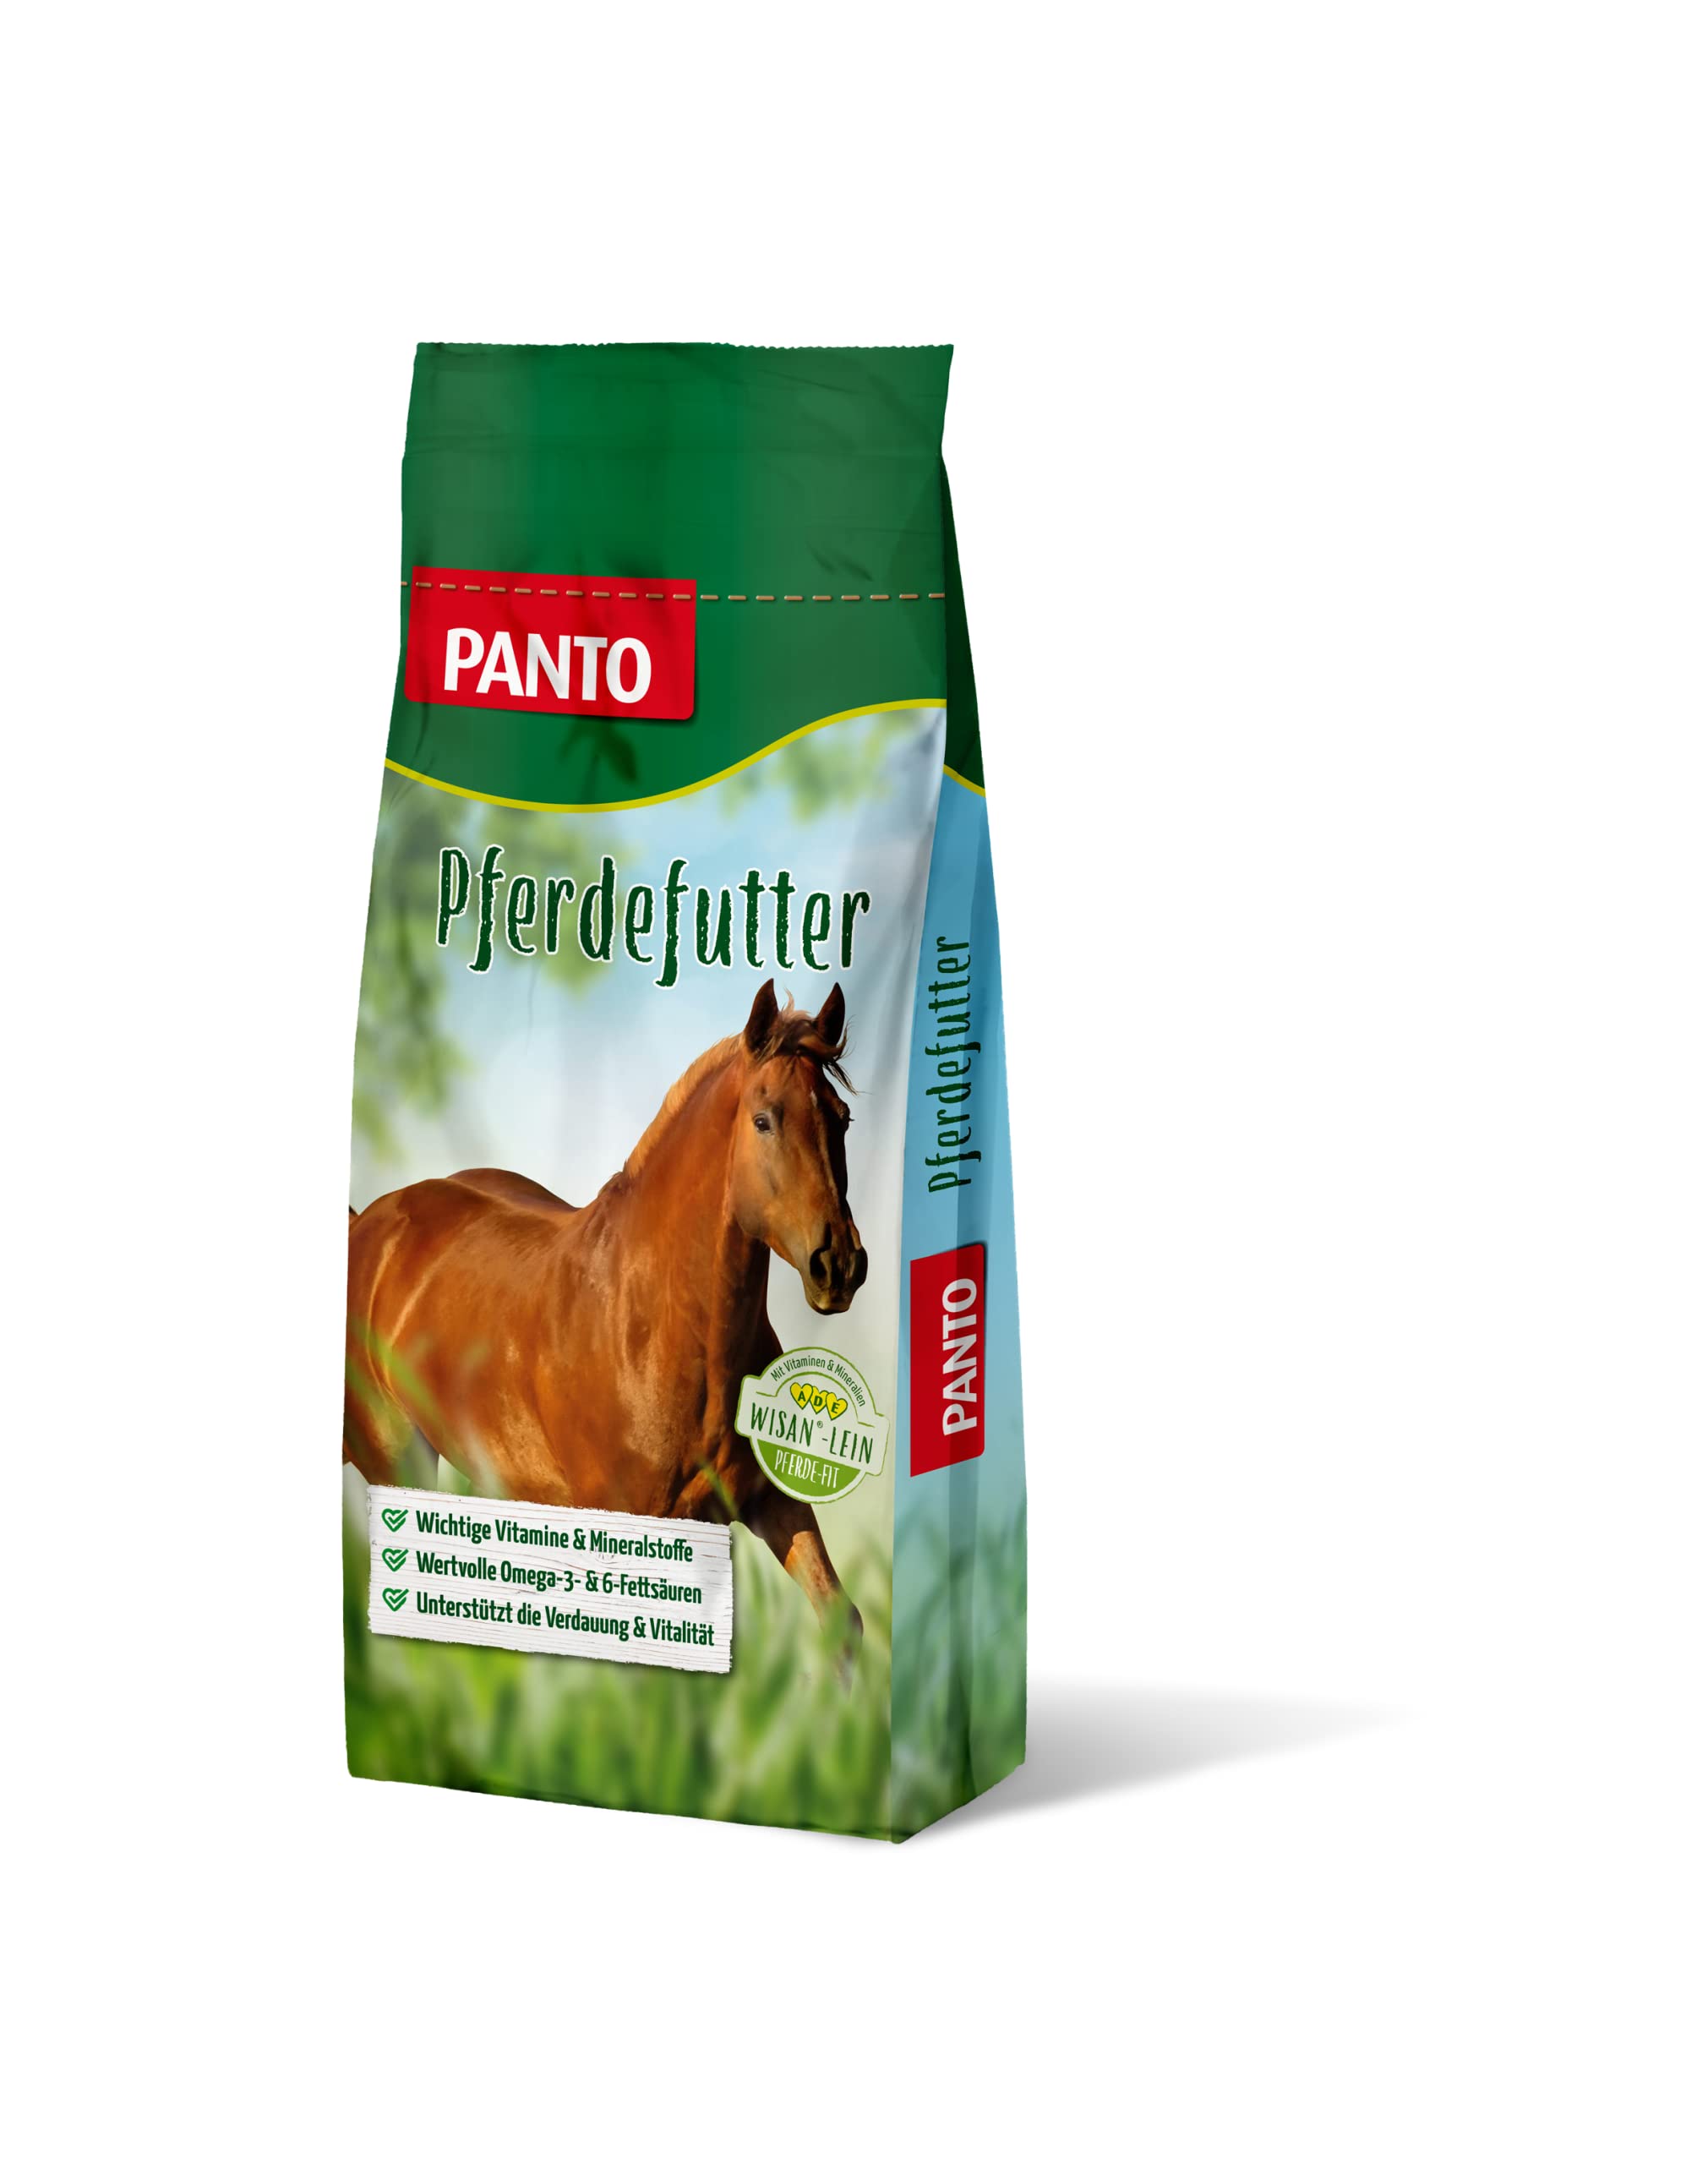 PANTO® Pferdefutter Seniorenmüsli mit Wisan®-Lein speziell für Pferde im höheren Alter